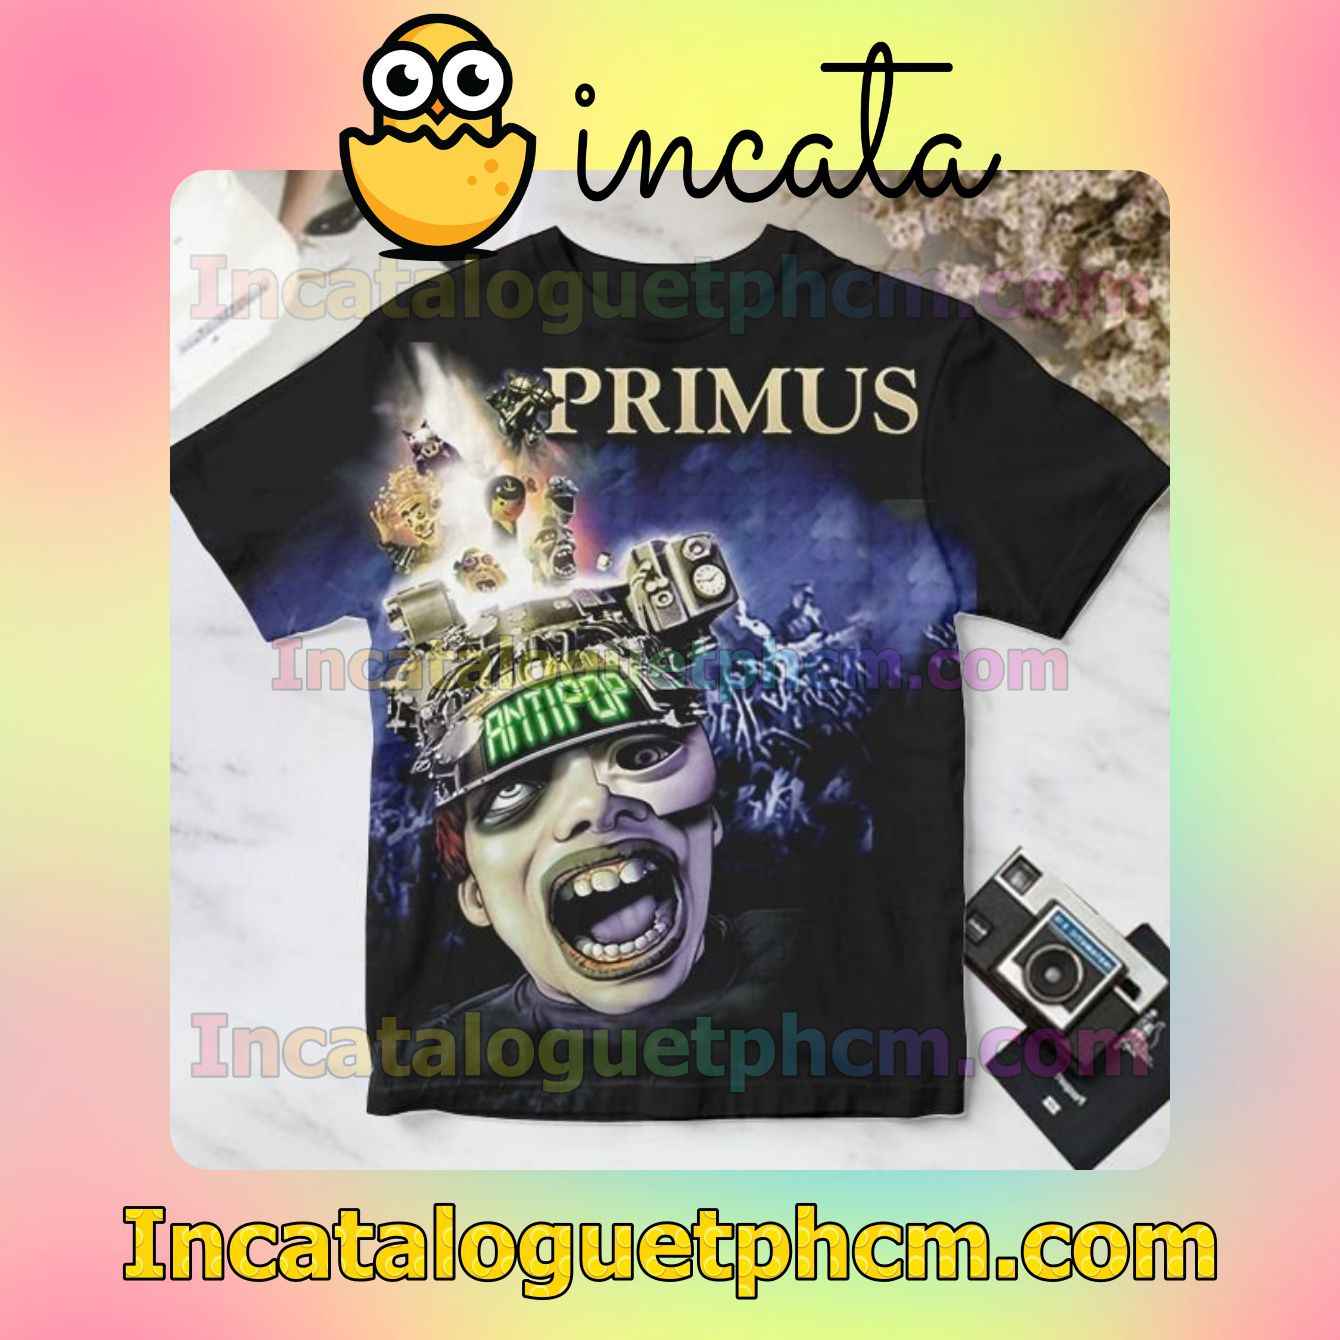 Primus Antipop Album Cover Personalized Shirt